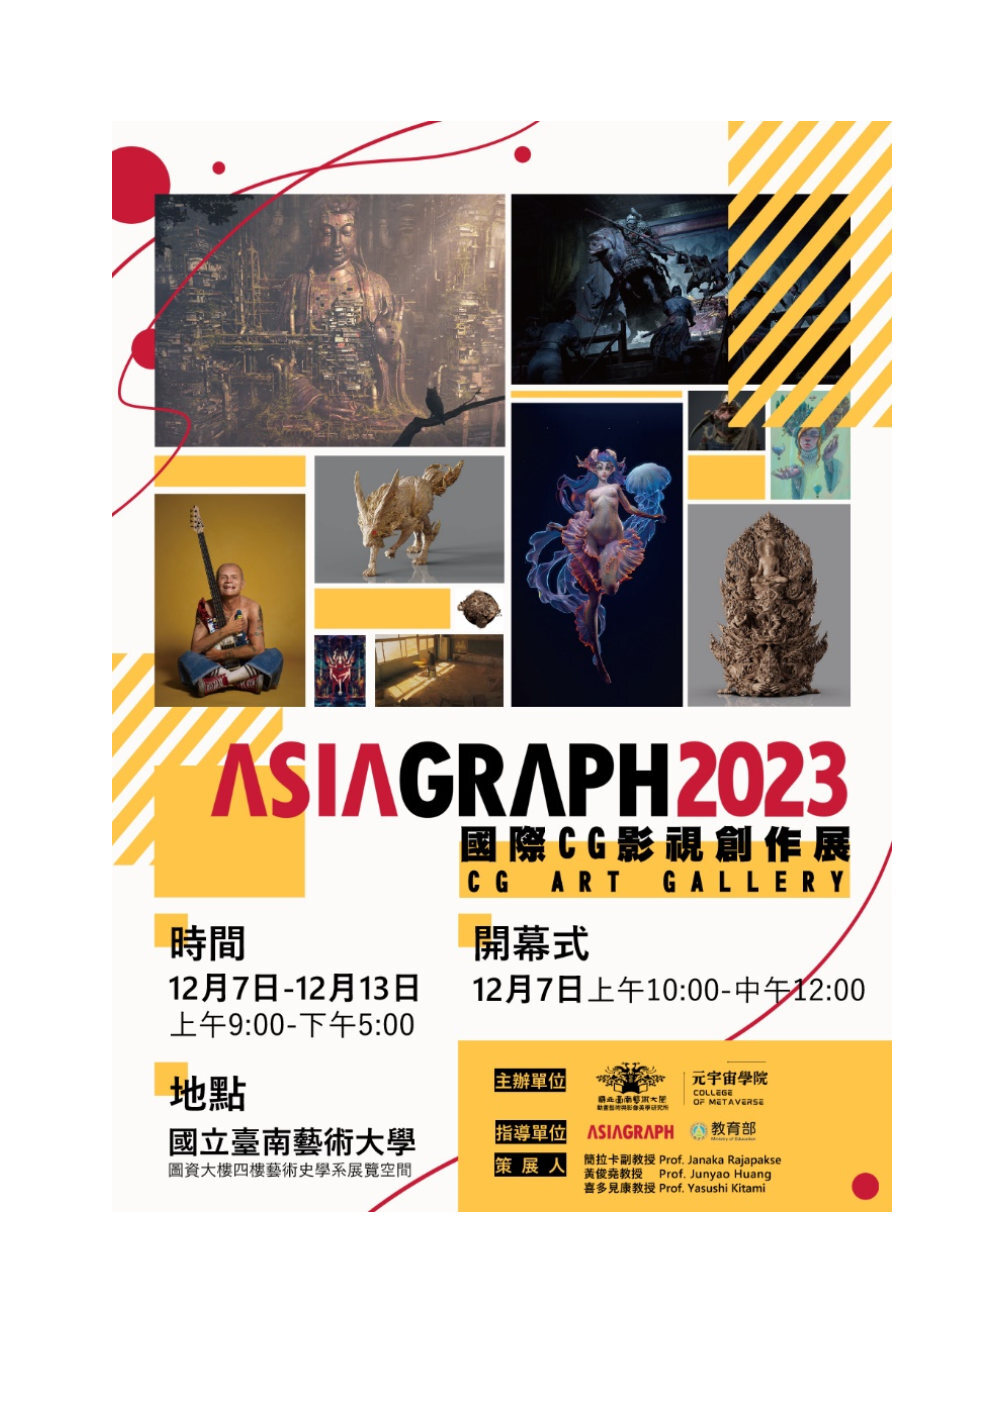 國際 CG 圖像創作展；ASIAGRAPH 2023 Art Gallery